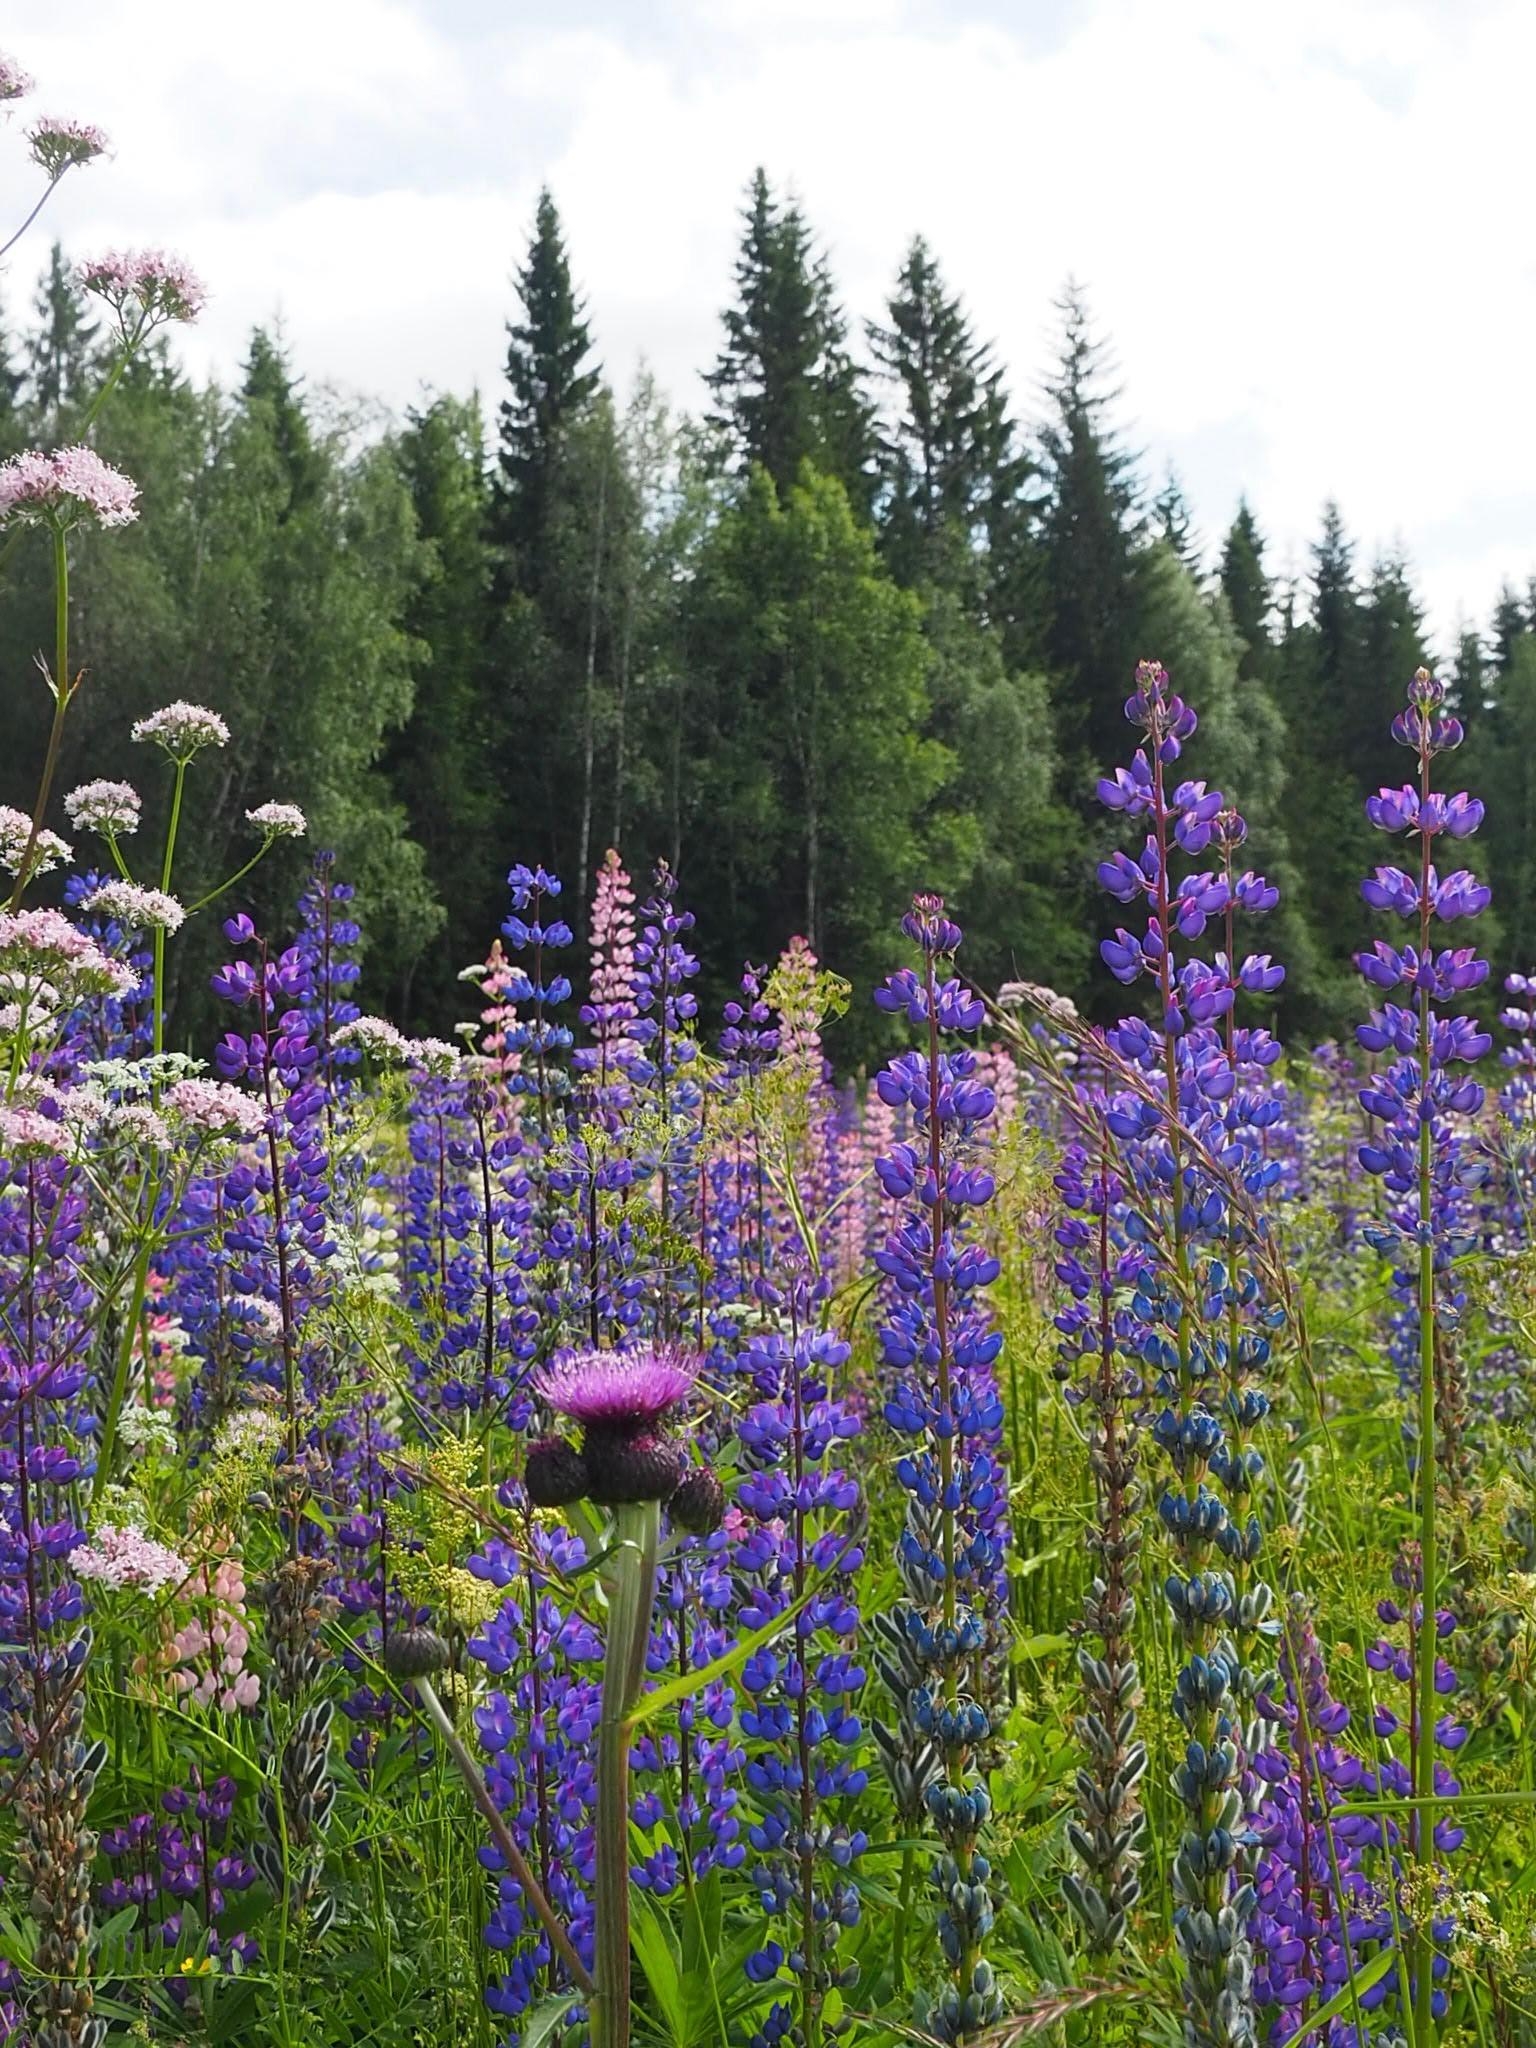 Sogar die Blumen am Straßenrand sind hier besonders schön 💜#freshflowerfriday #sommerblumen #urlaub #norwegen 